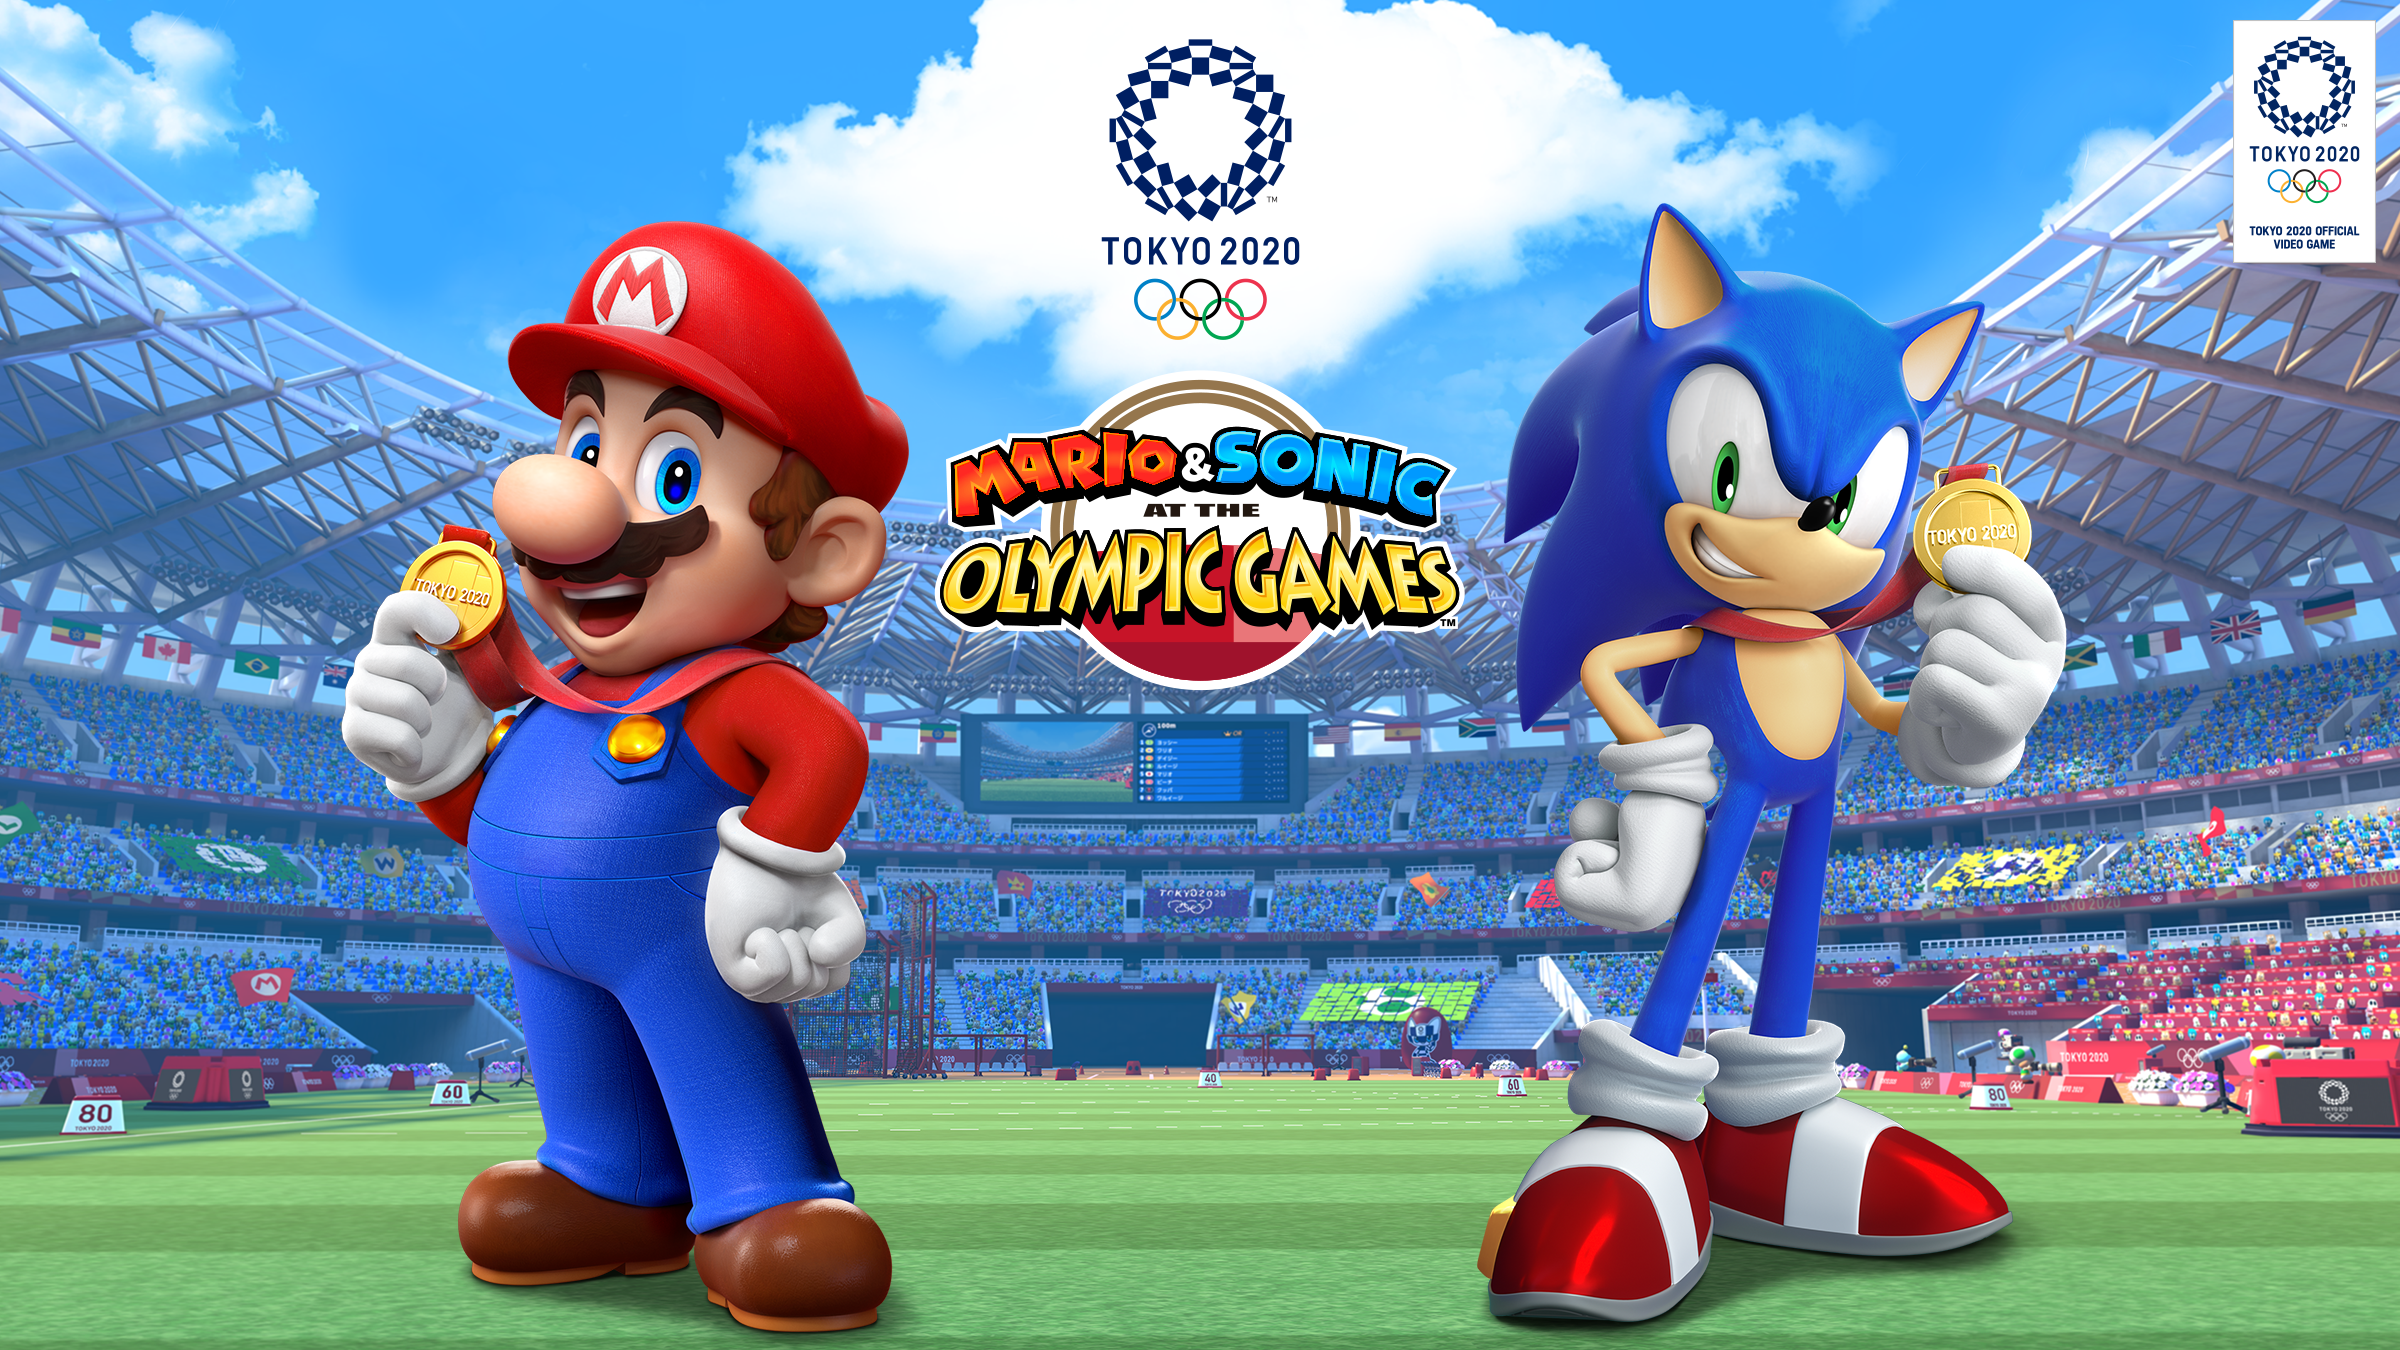 Hình nền Mario & Sonic Olympic Games Tokyo 2020: Hãy tận hưởng cảm giác đầy màu sắc và phấn khích khi làm nền cho màn hình máy tính bằng hình ảnh những nhân vật yêu thích của chúng ta trong phiên bản Mario & Sonic Olympic Games Tokyo